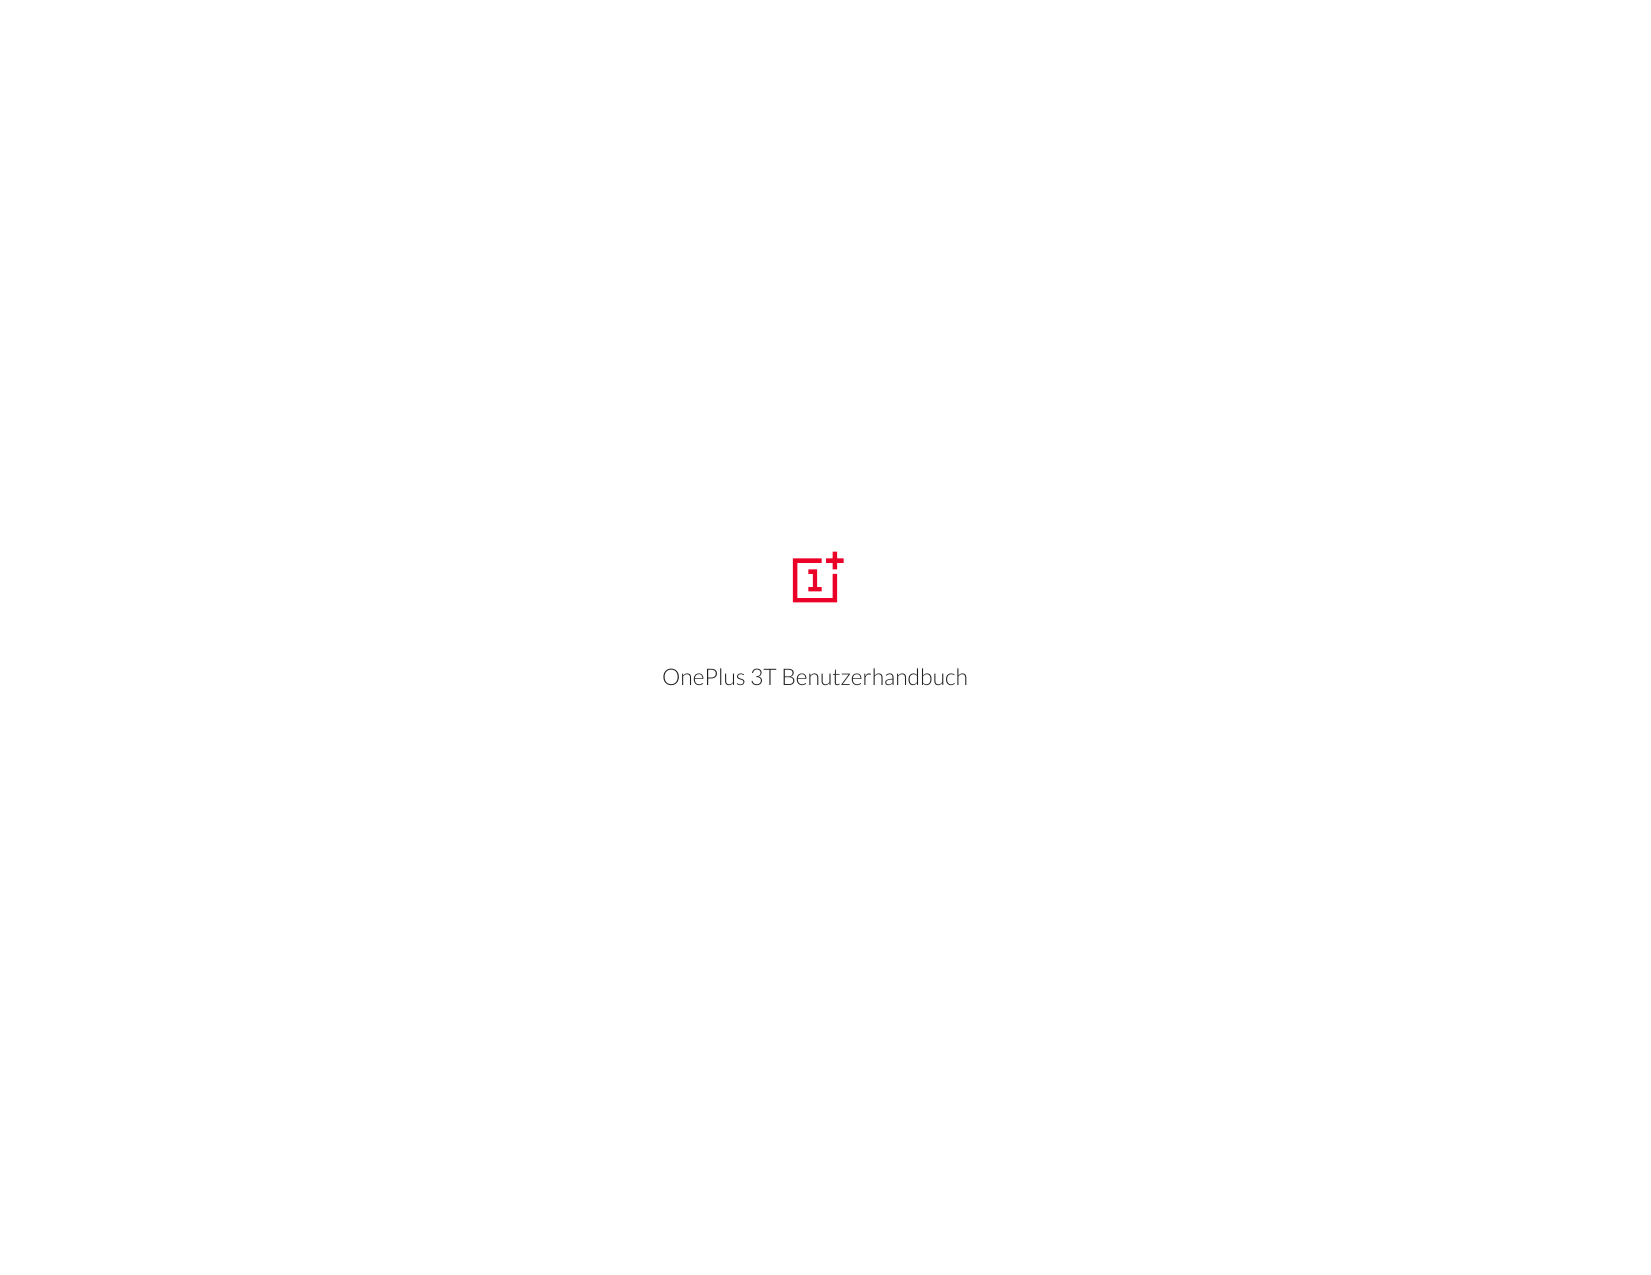 OnePlus 3T Benutzerhandbuch